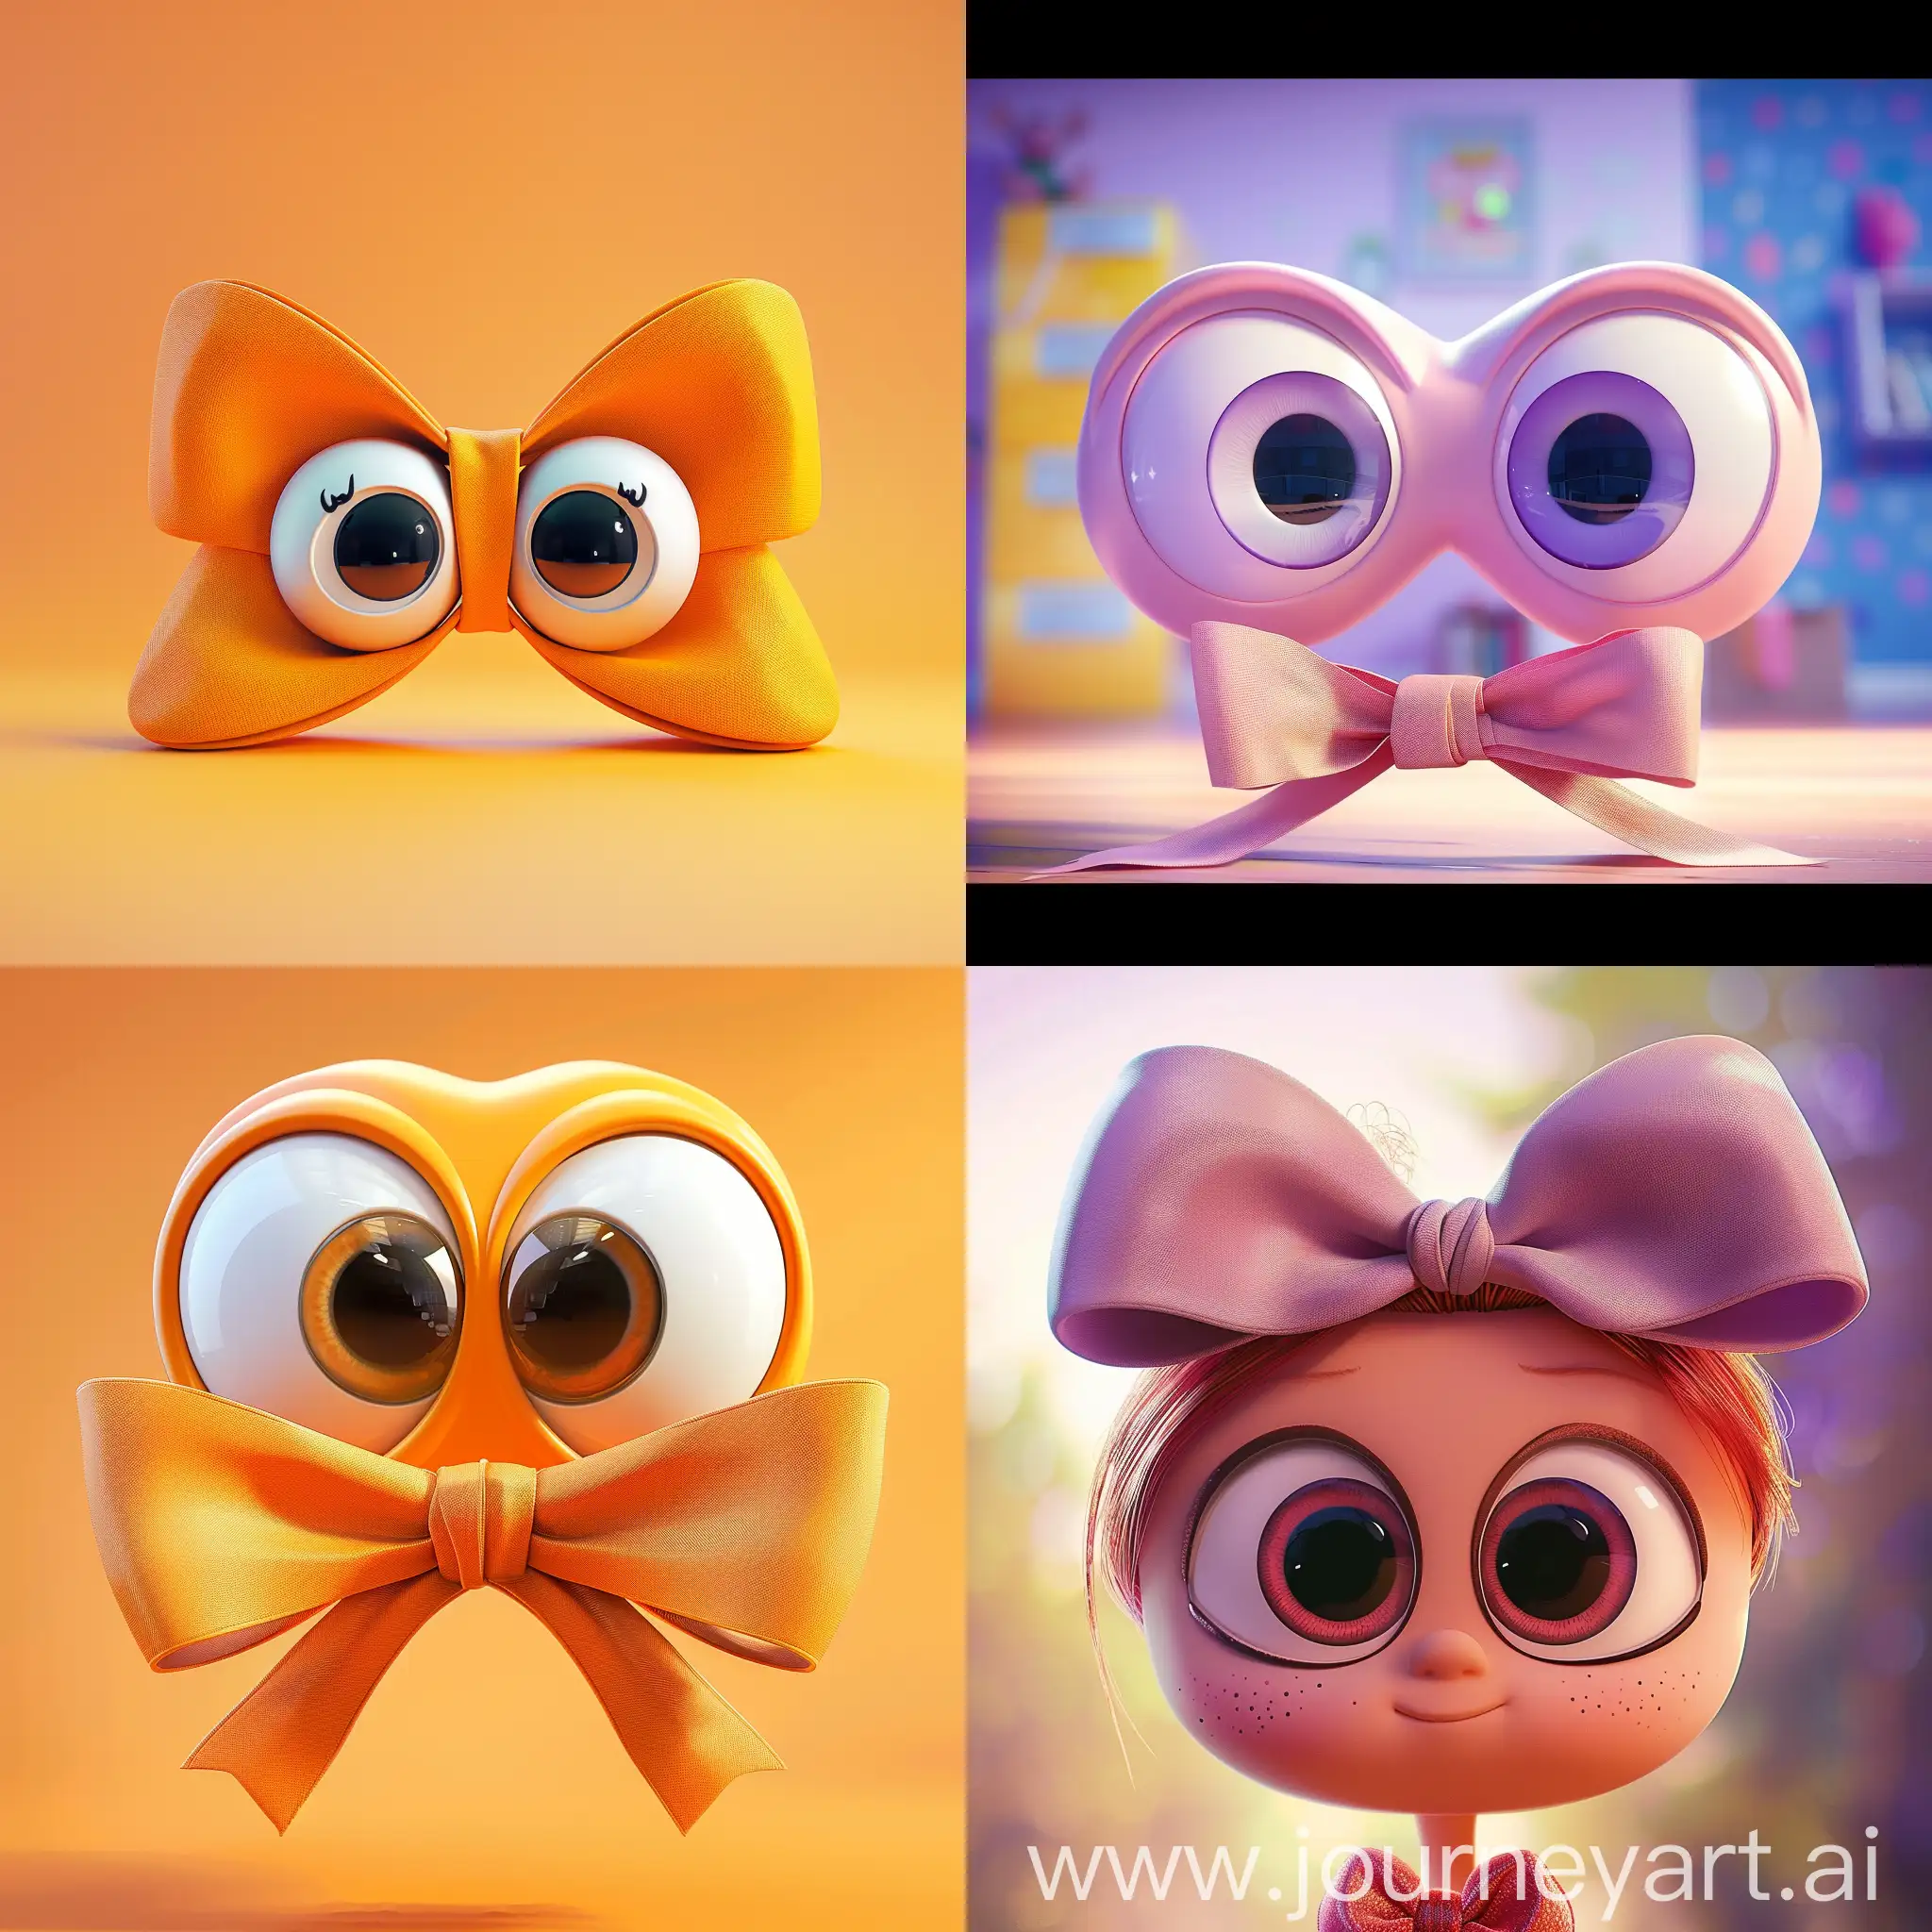 бант  с большими глазами эмоциональный  вид сбоку 
симметричный анимация pixar на ярком   фоне